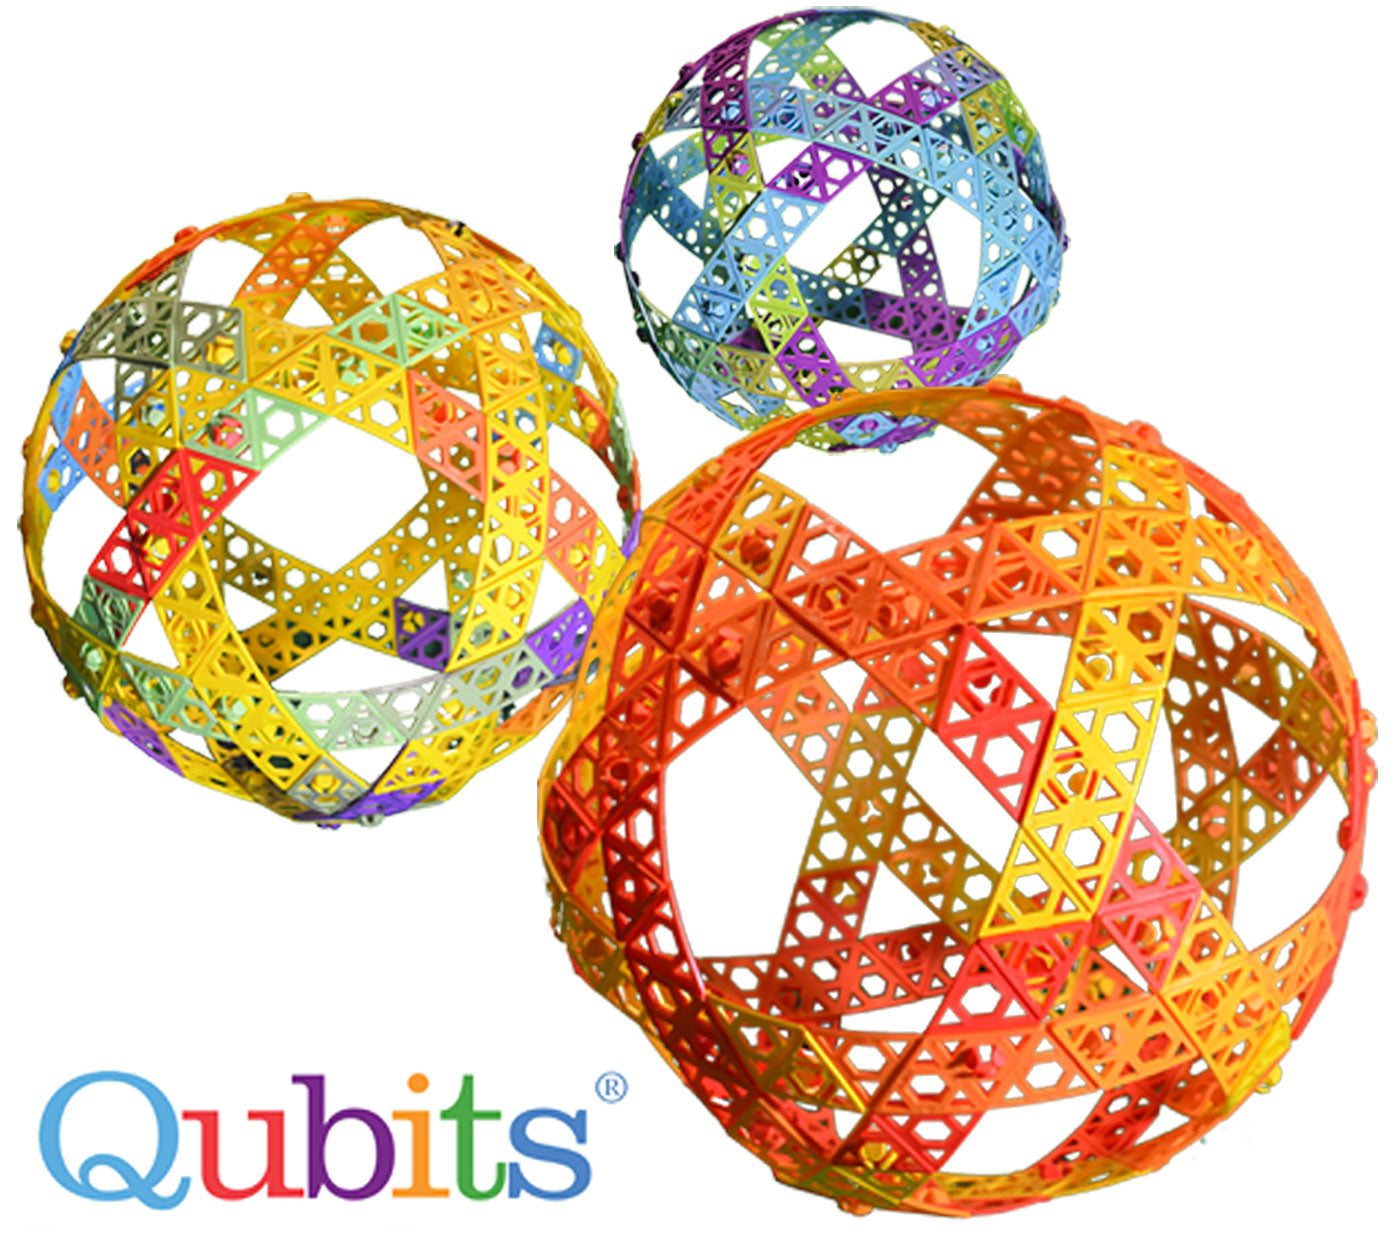 Qubits 60 piece Sphere Instructions